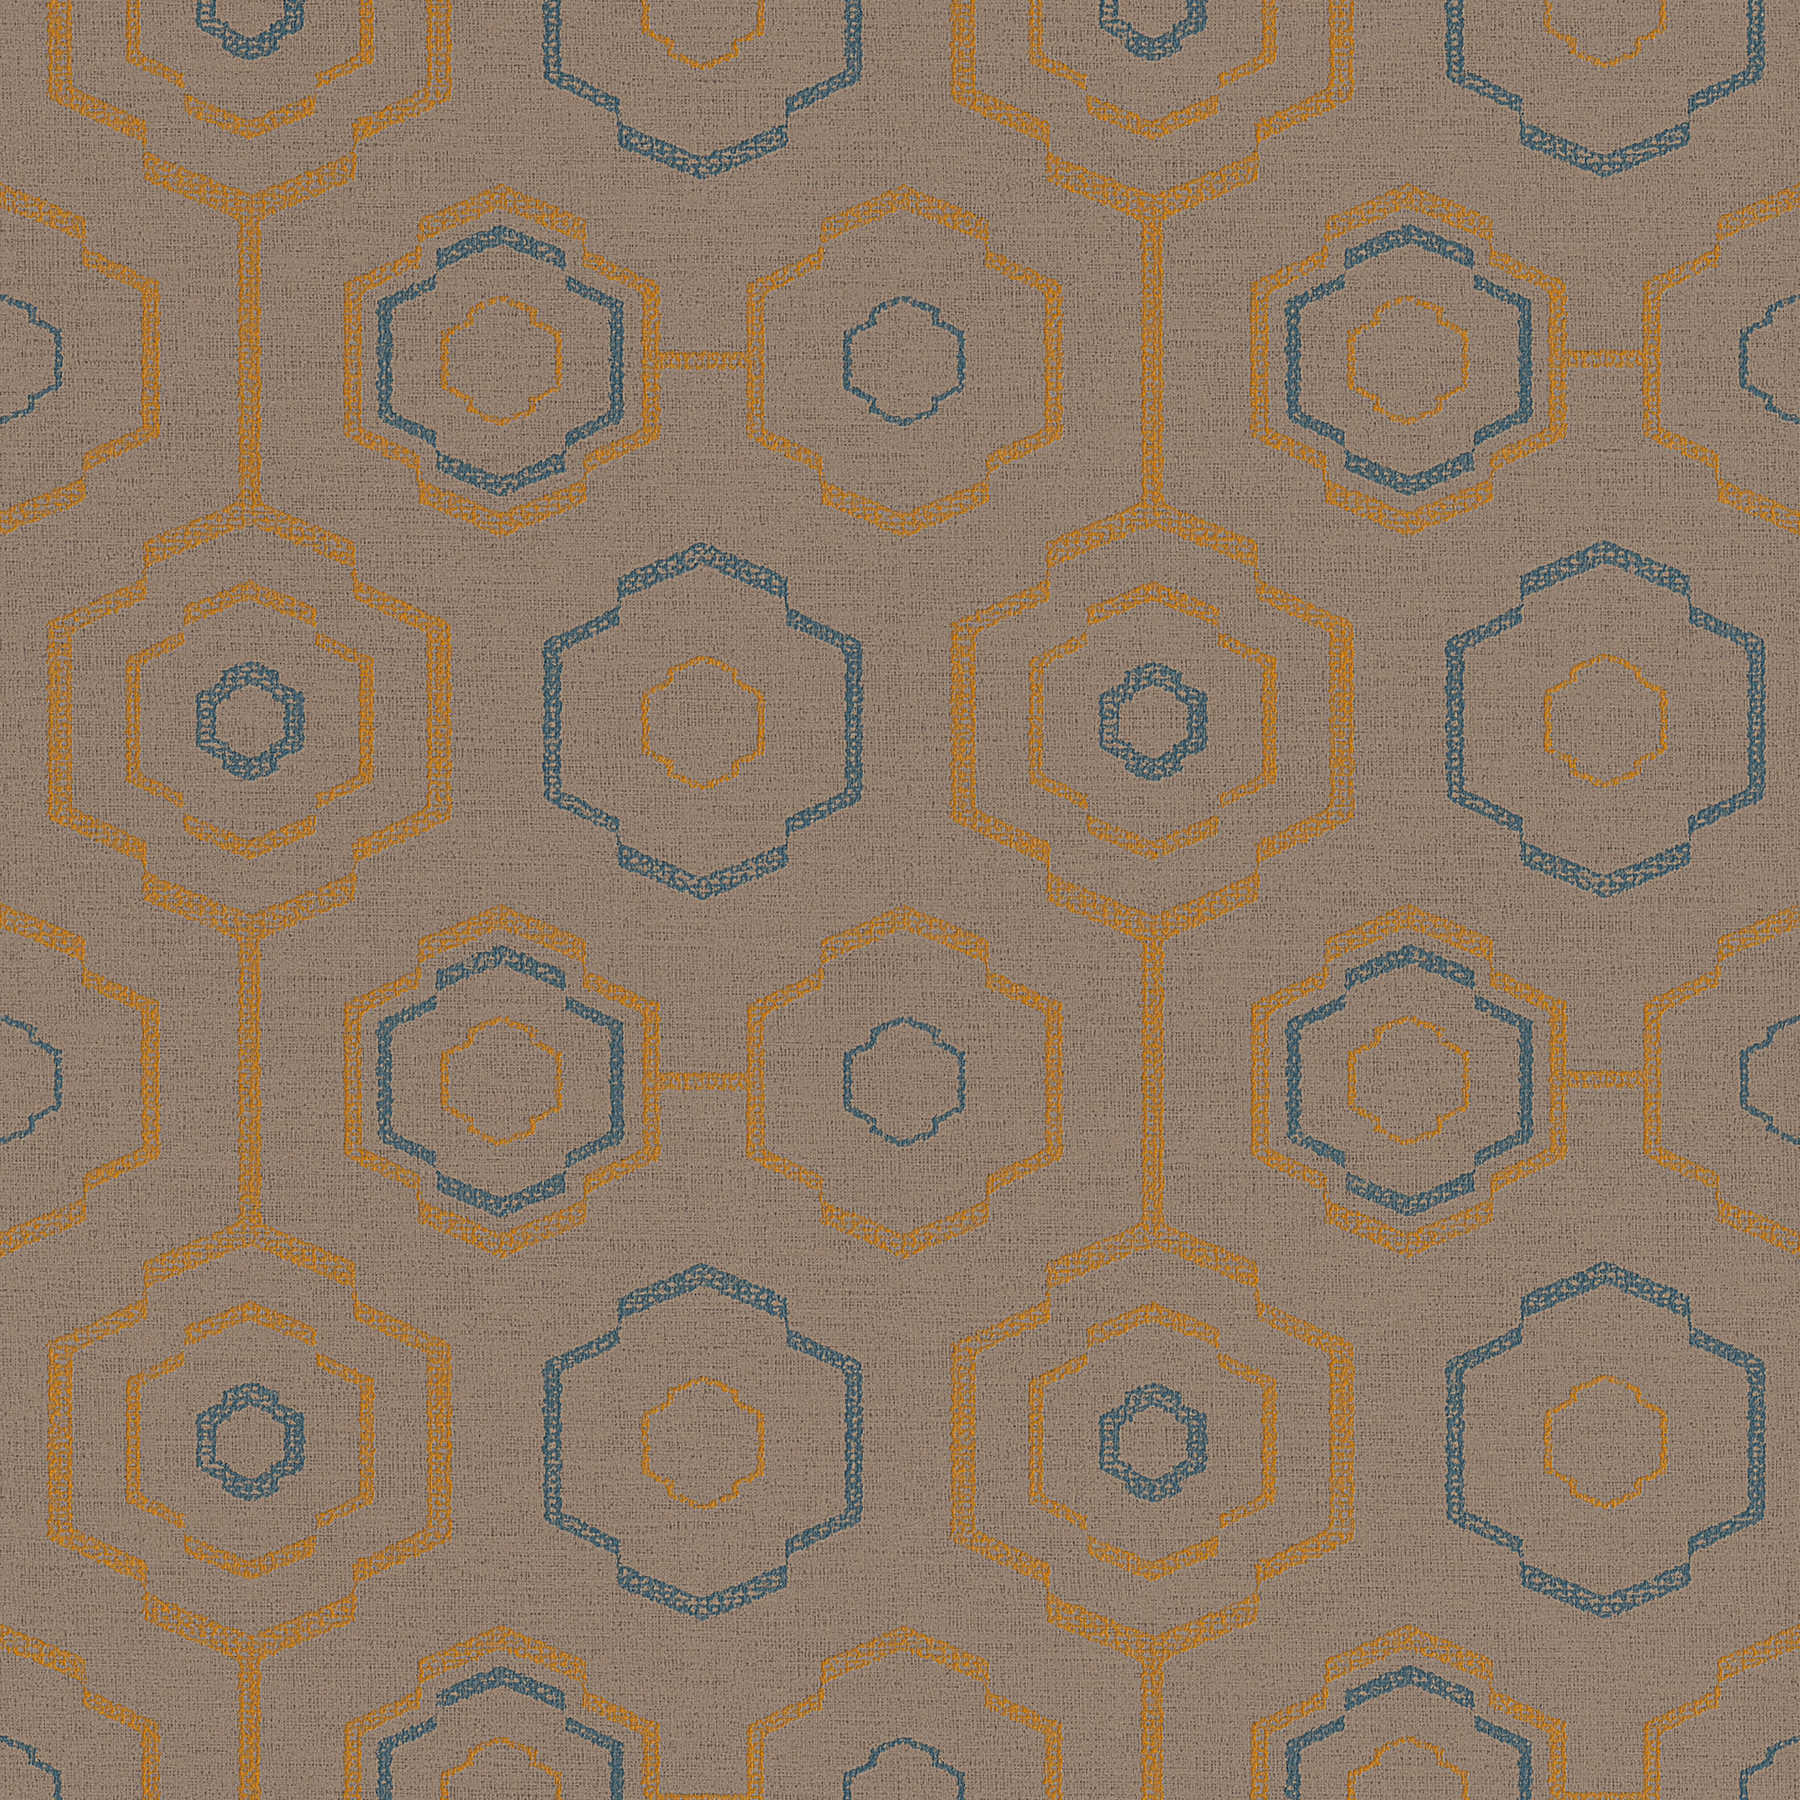         Tapete indigenes Textilmuster mit geometrischem Design – Braun, Blau, Orange
    